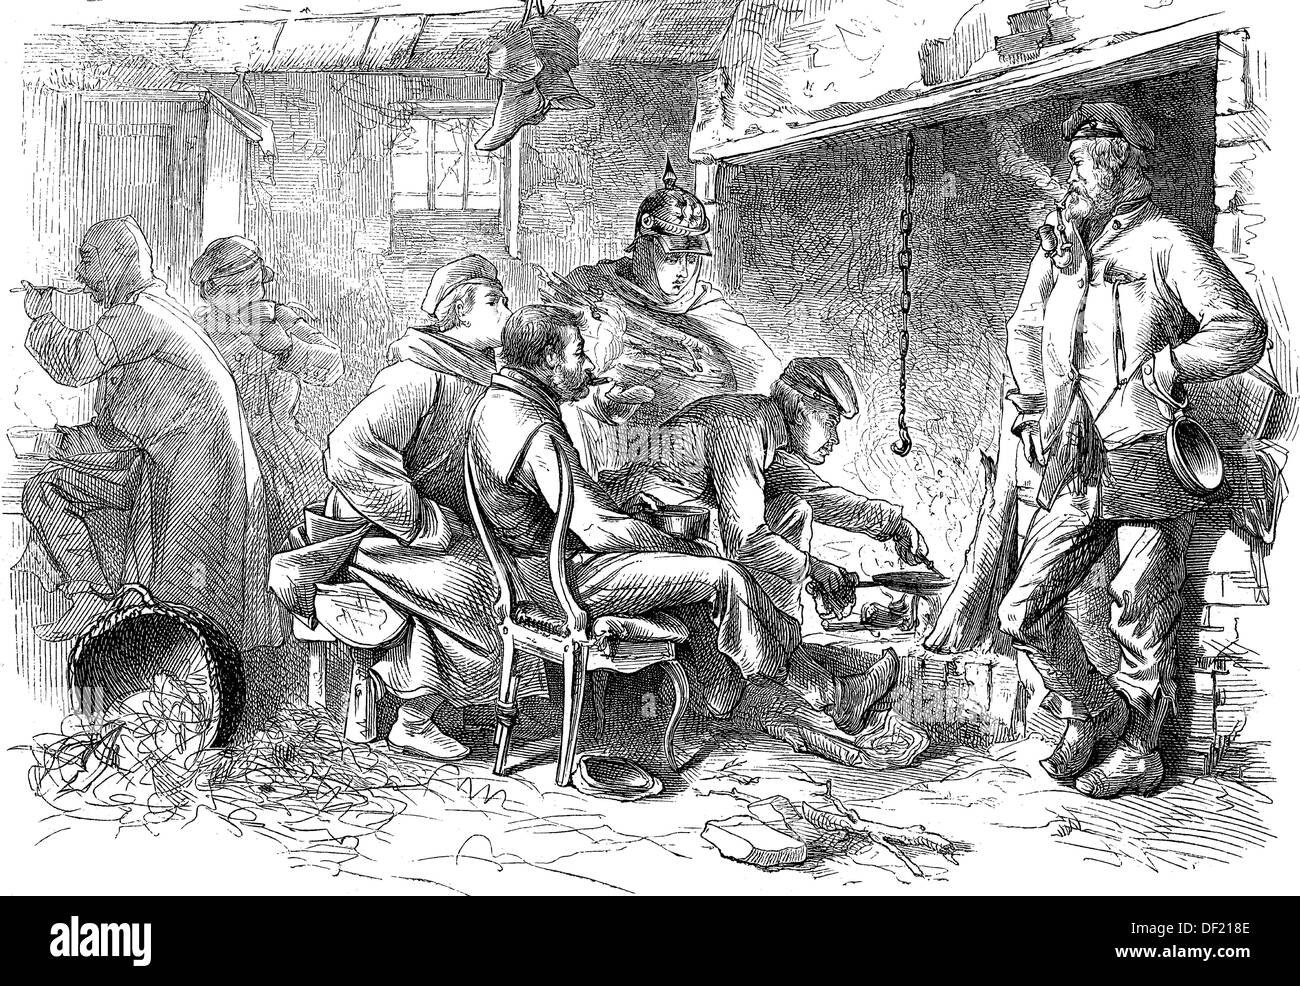 El acantonamiento de soldados en la cocina, xilografía de 1864 Foto de stock